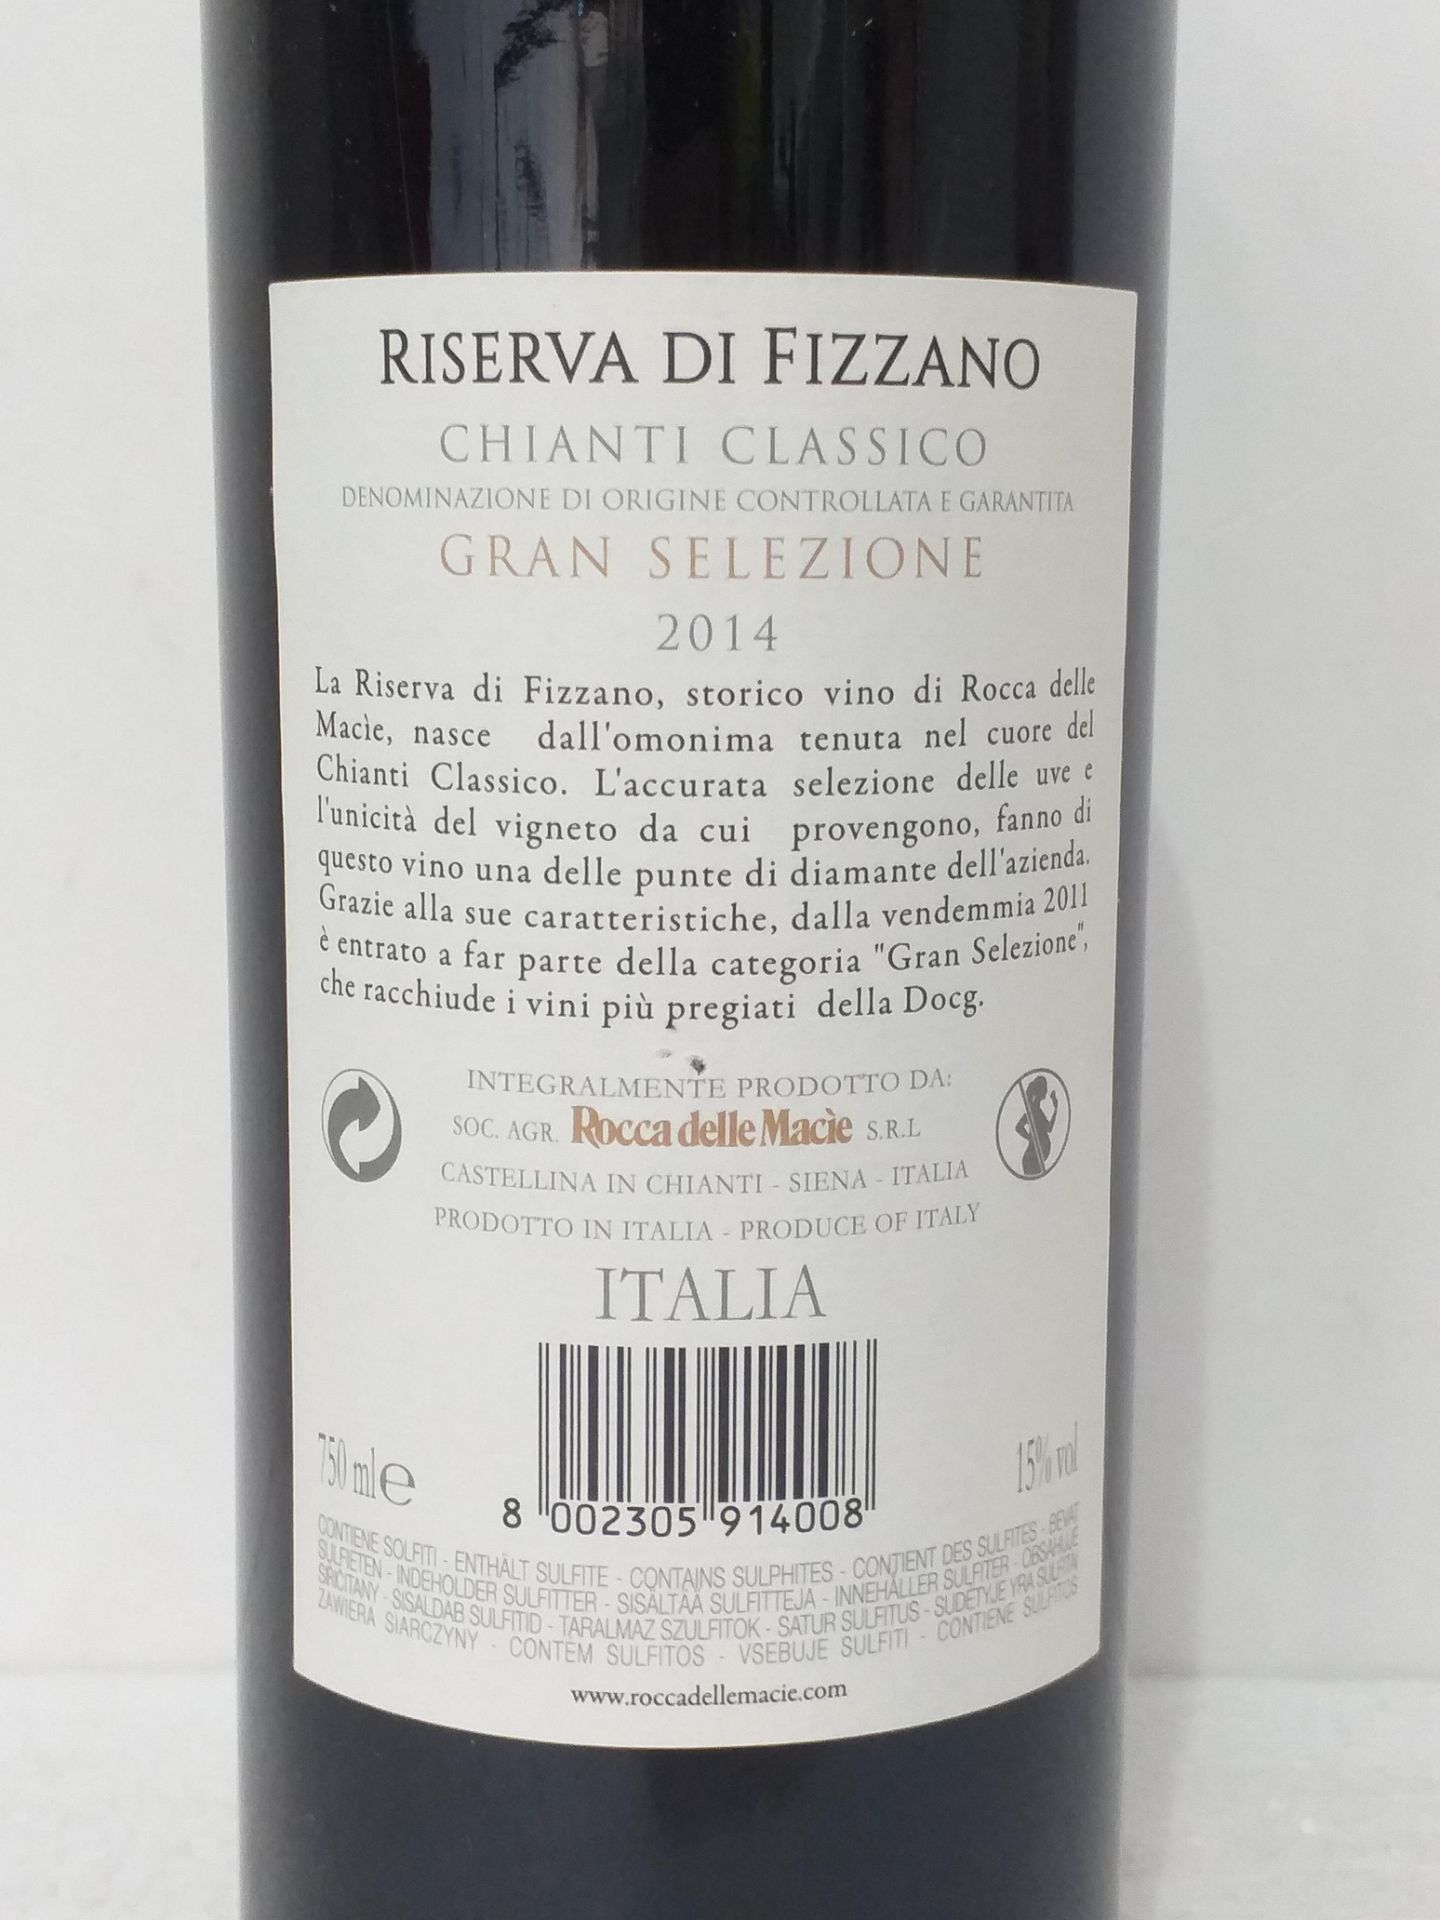 6 Bottles of Chianti Riserva Fizzano 2014 - Image 3 of 3